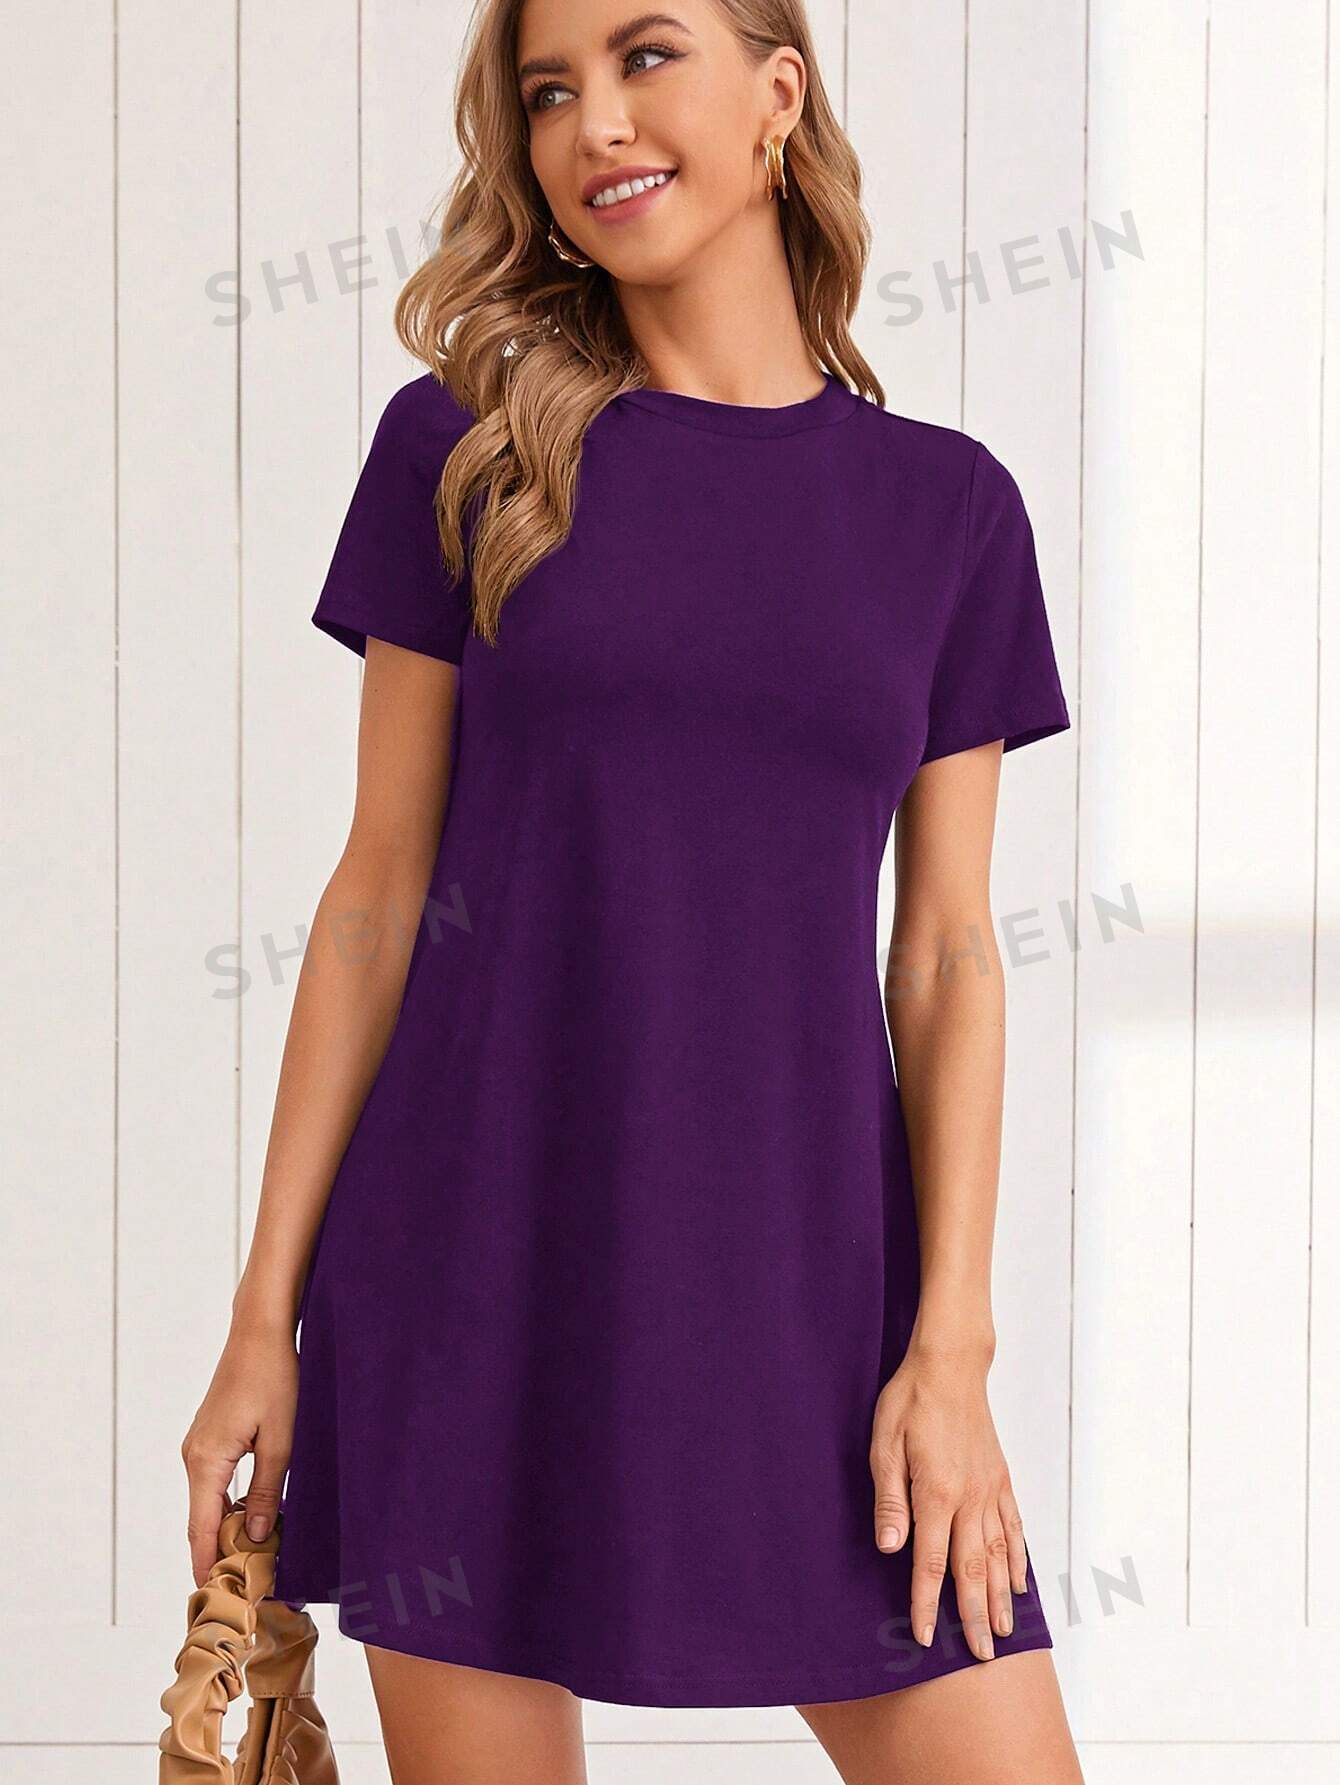 SHEIN LUNE Трикотажное однотонное повседневное платье с круглым вырезом и короткими рукавами, фиолетовый платье trends brands однотонное 46 48 размер